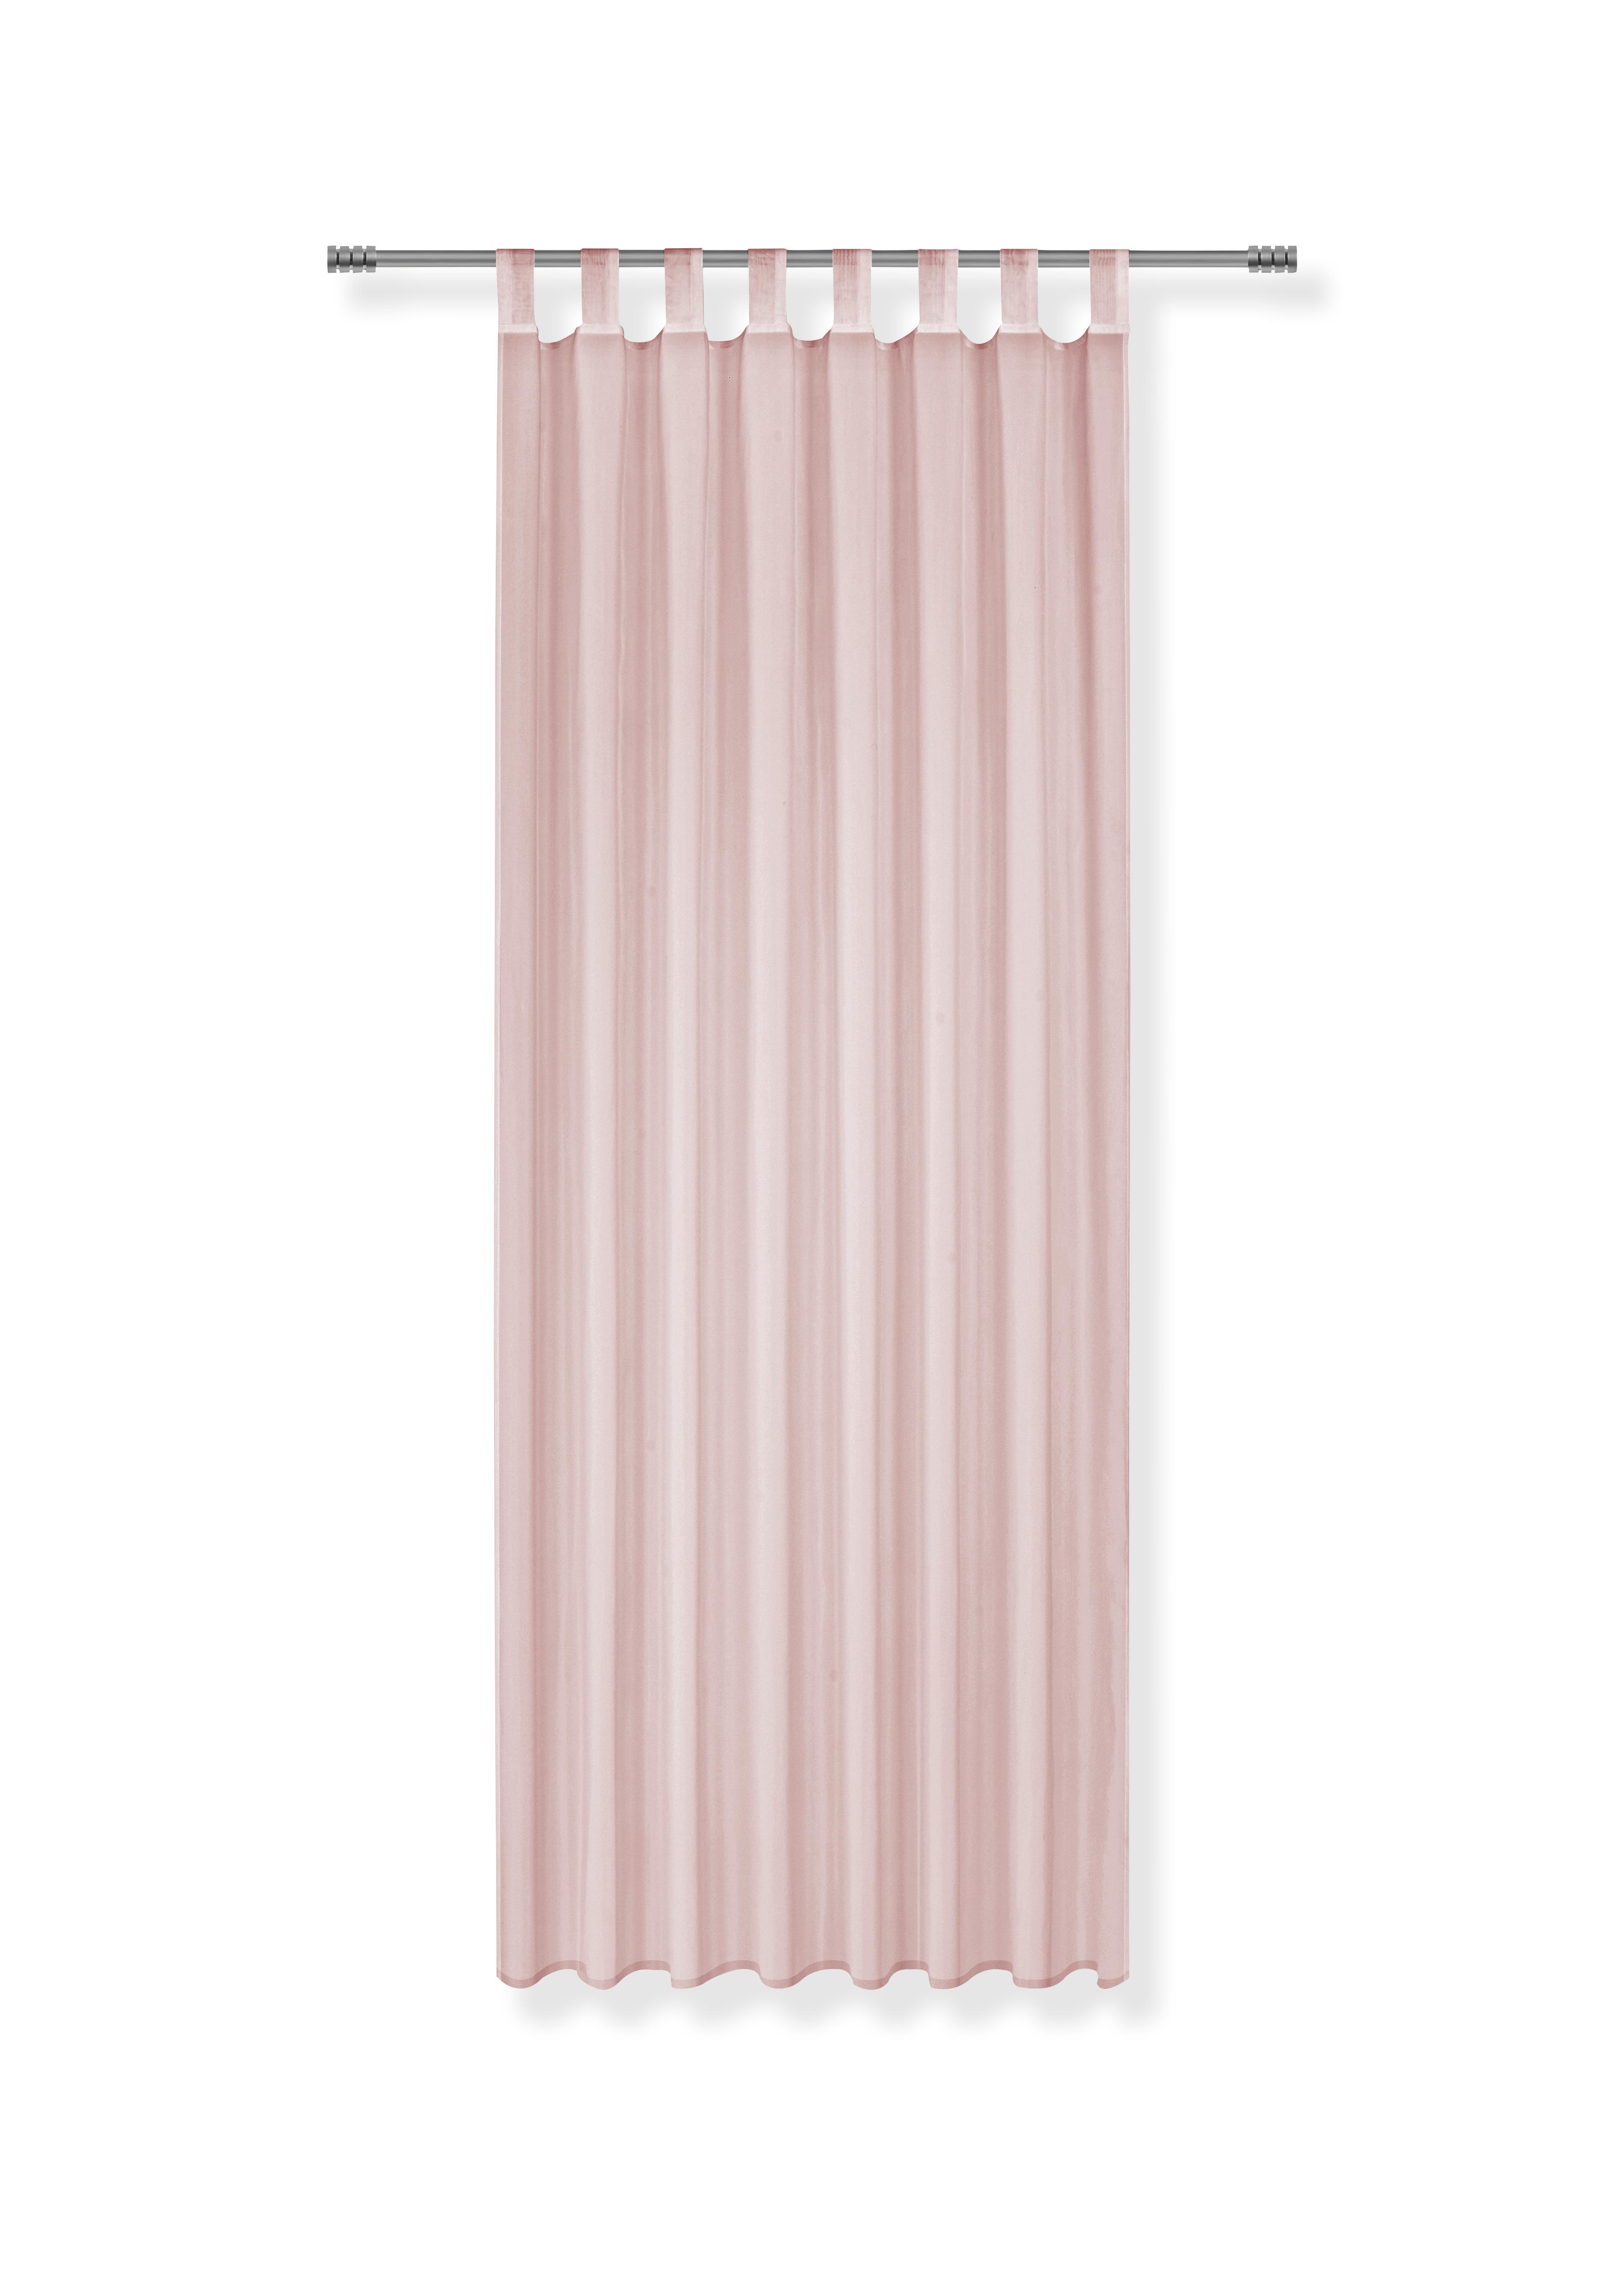 Závěs S Poutky Hanna 2ks-Cen. Trhák,140/245cm - růžová, textil (140/245cm) - Based